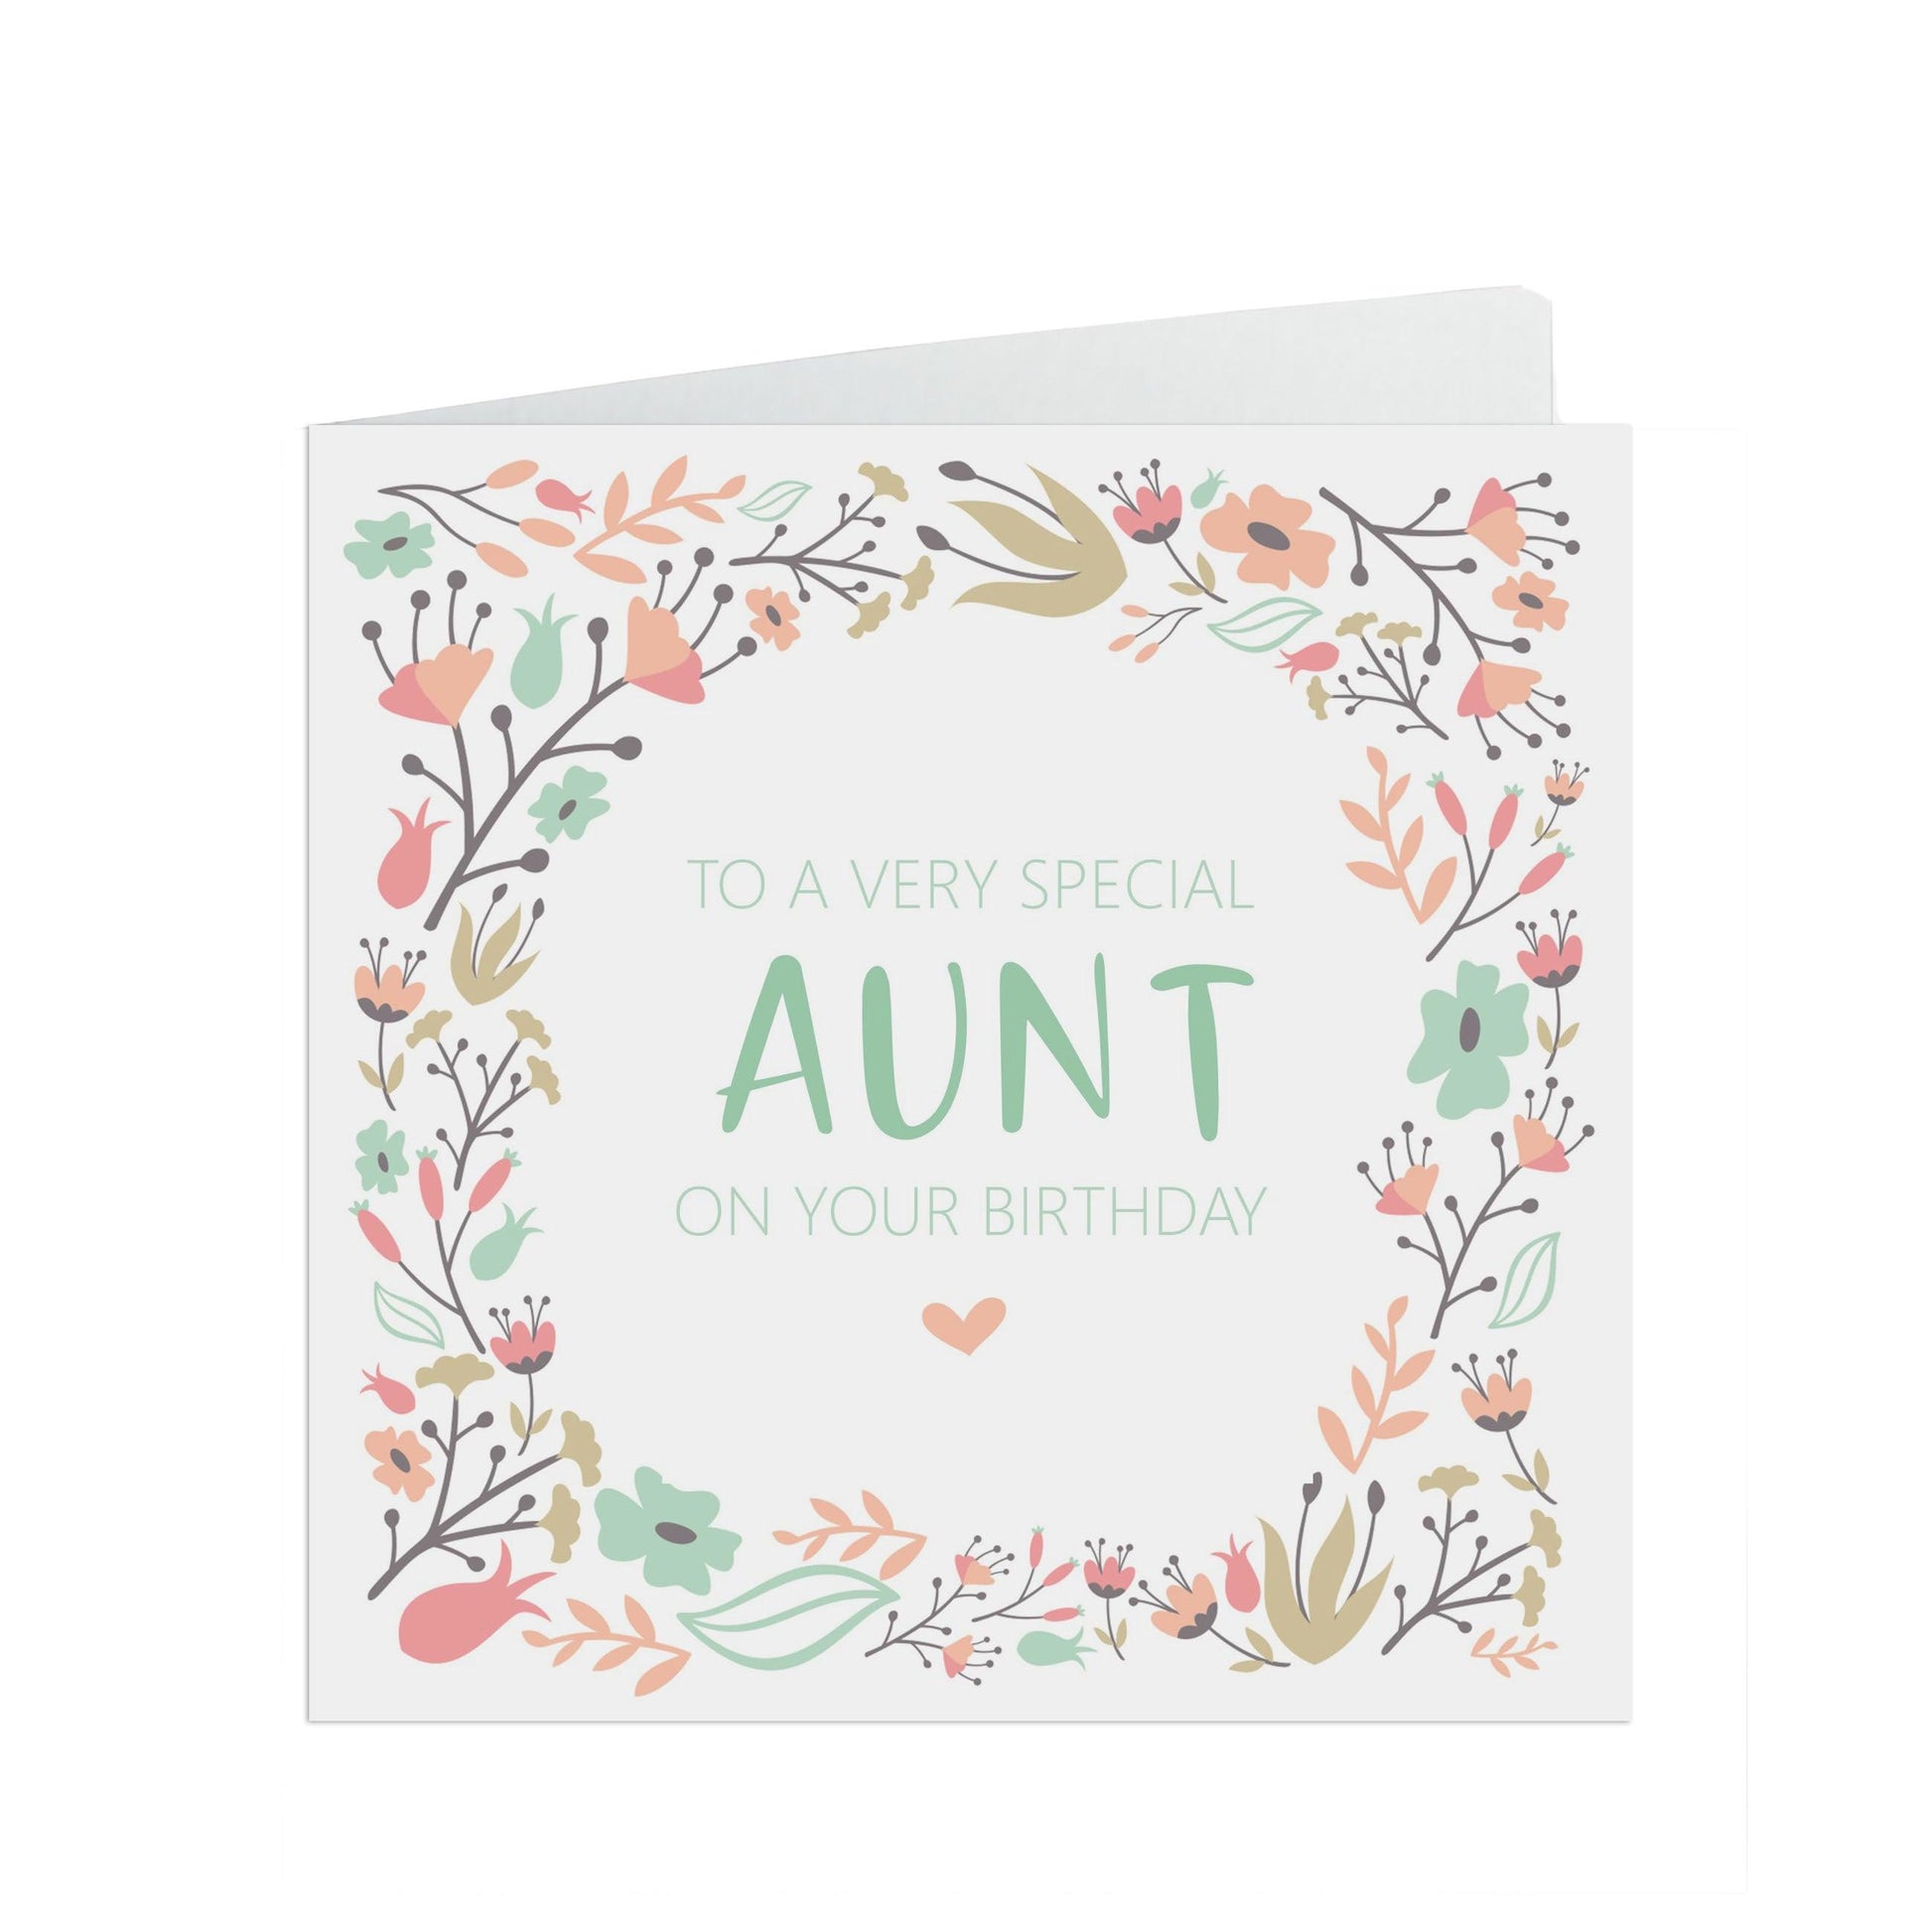  Aunt Birthday Card, Sage & Peach Flower Design by PMPRINTED 